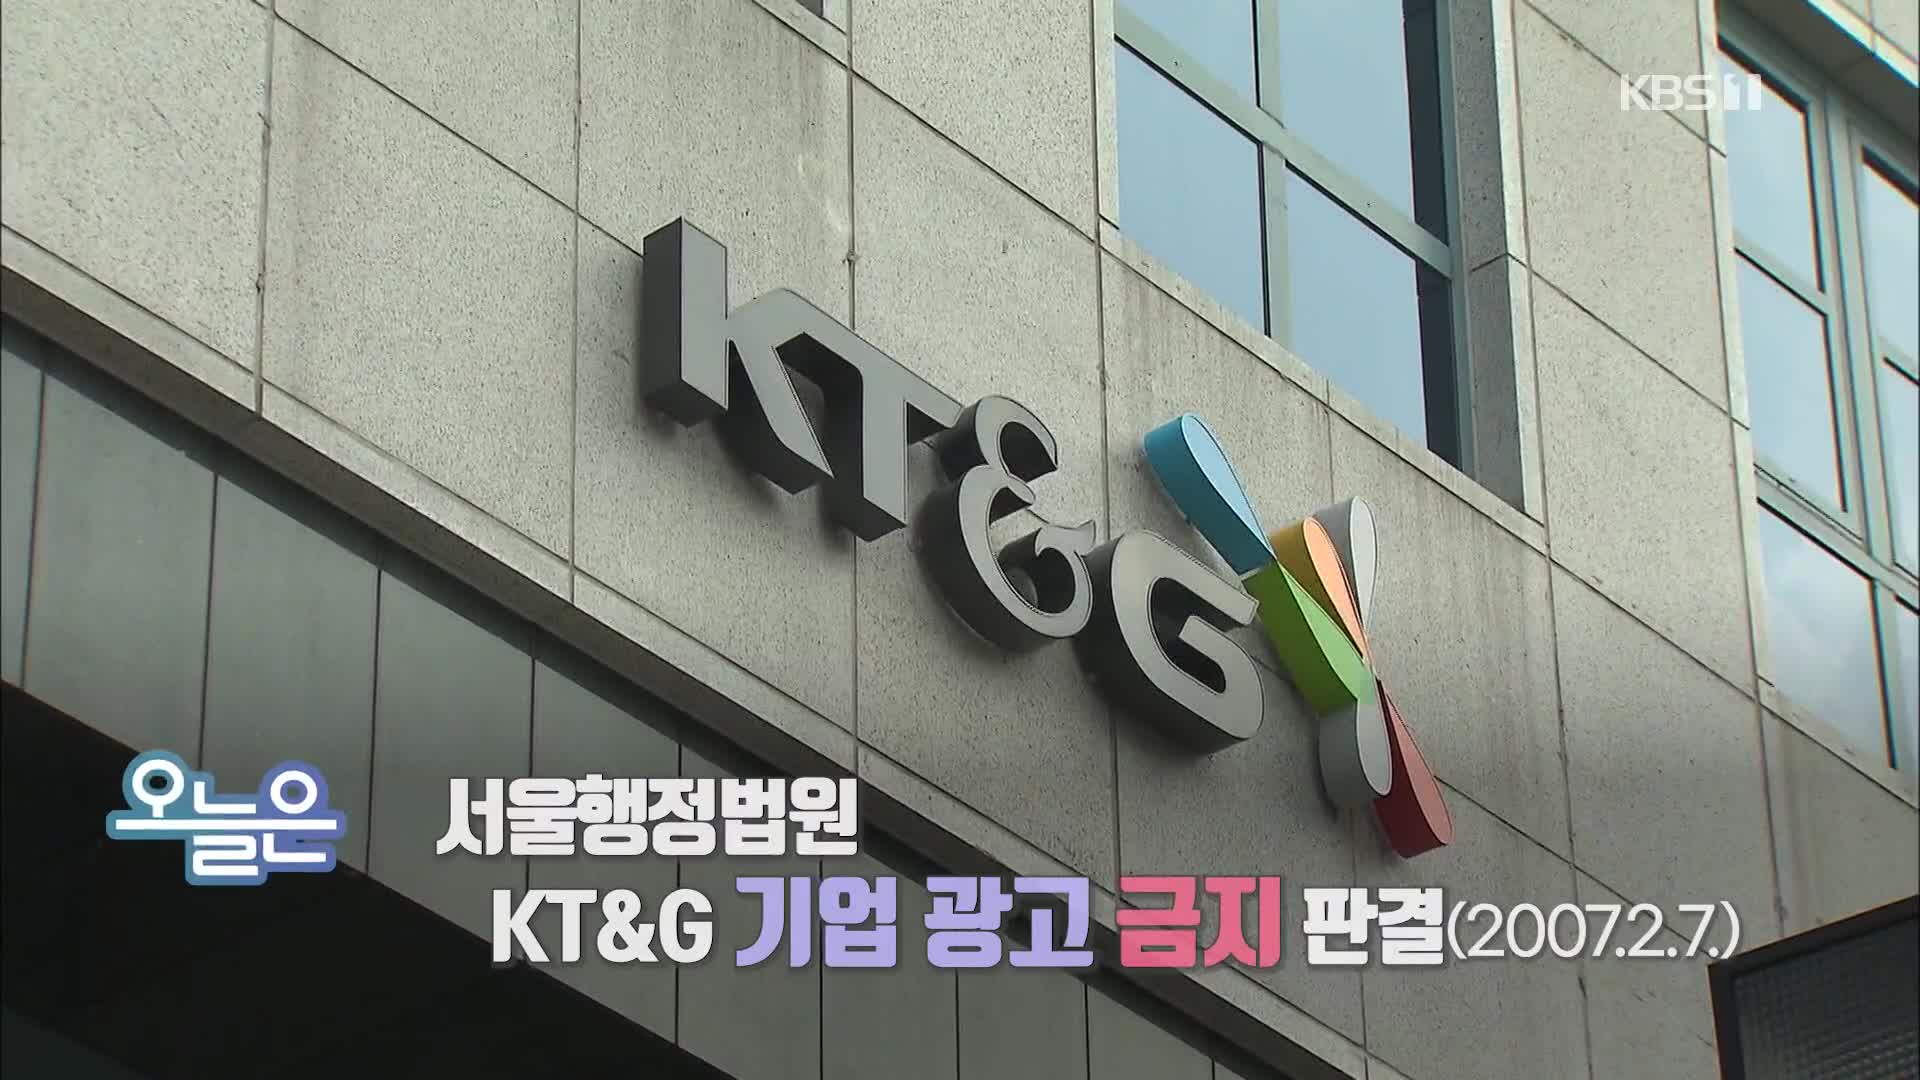 [오늘은] 서울행정법원 KT&G 기업 광고 금지 판결 (2007.2.7.)